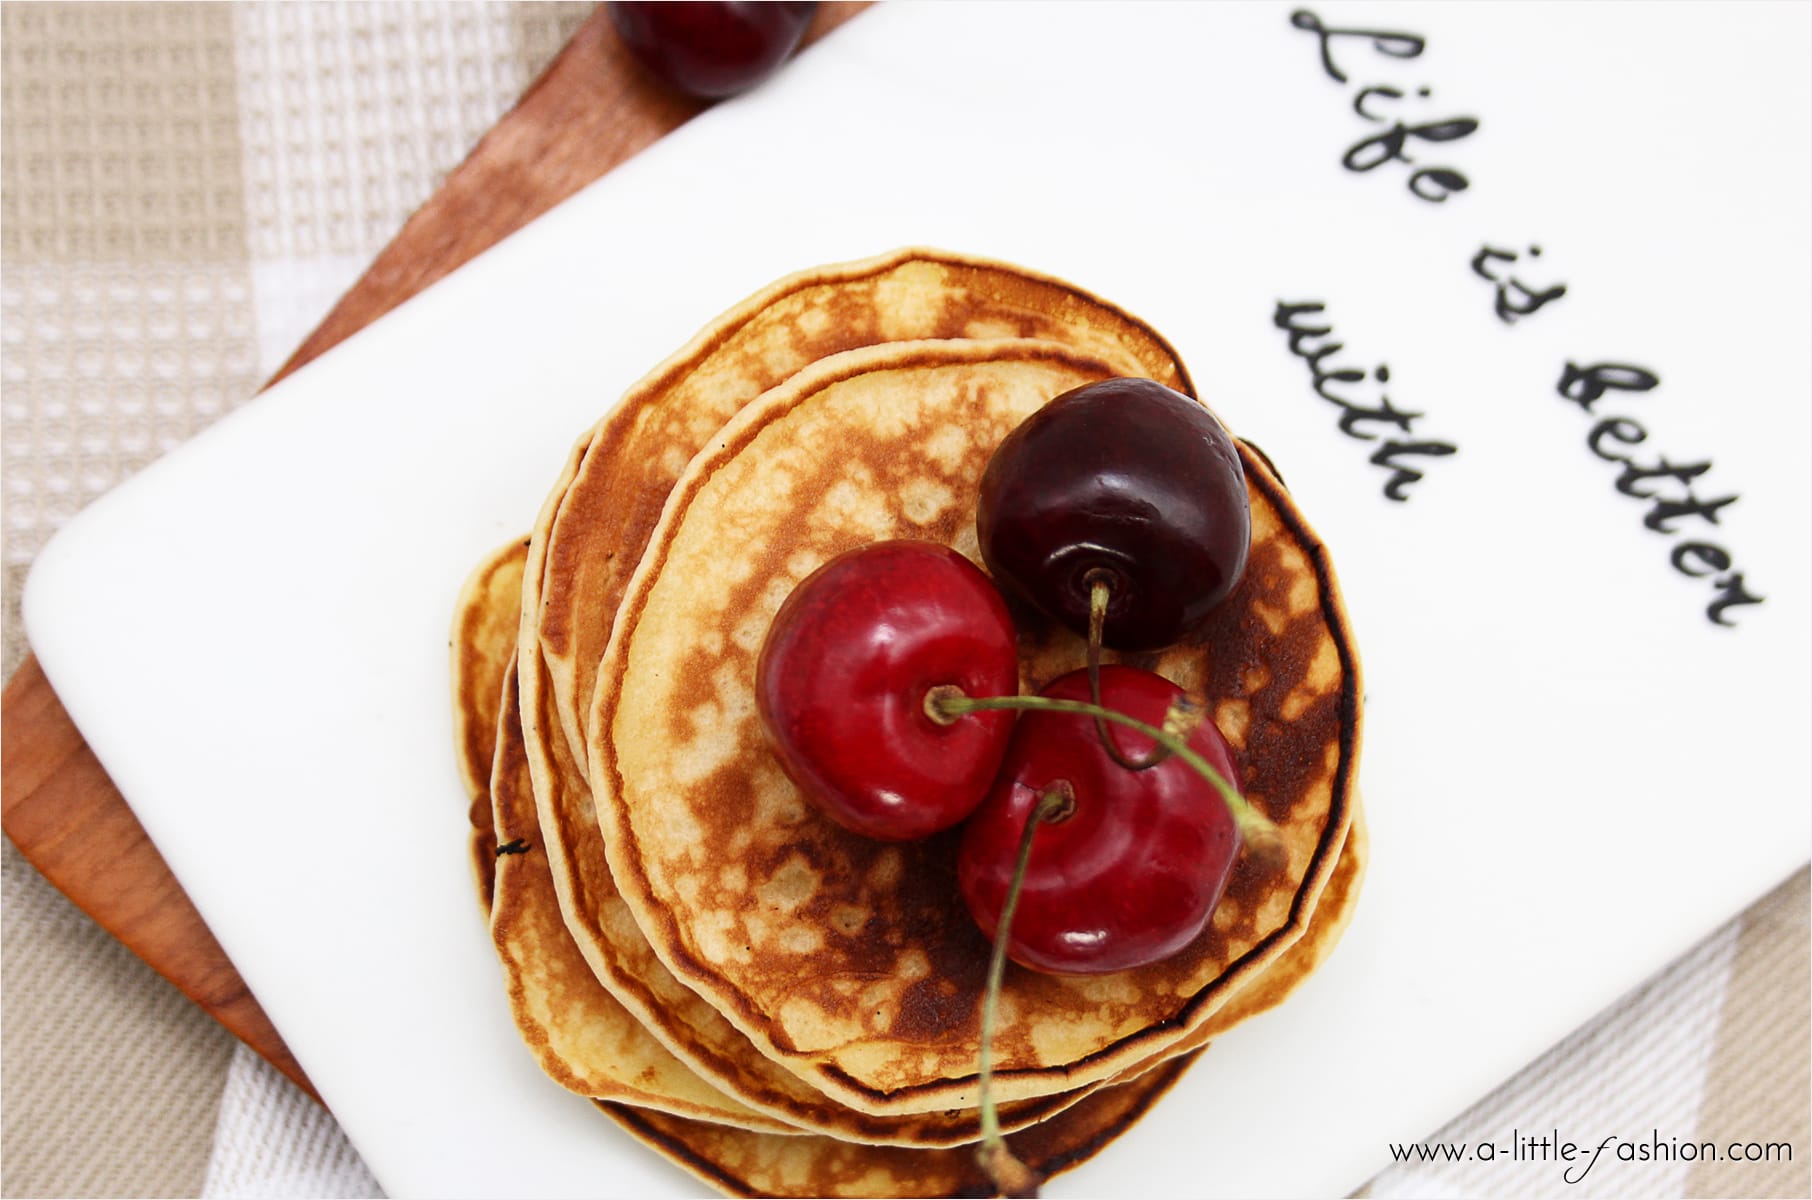 pancakes_grund-rezept_amerikanische-pfannkuchen_food2-min